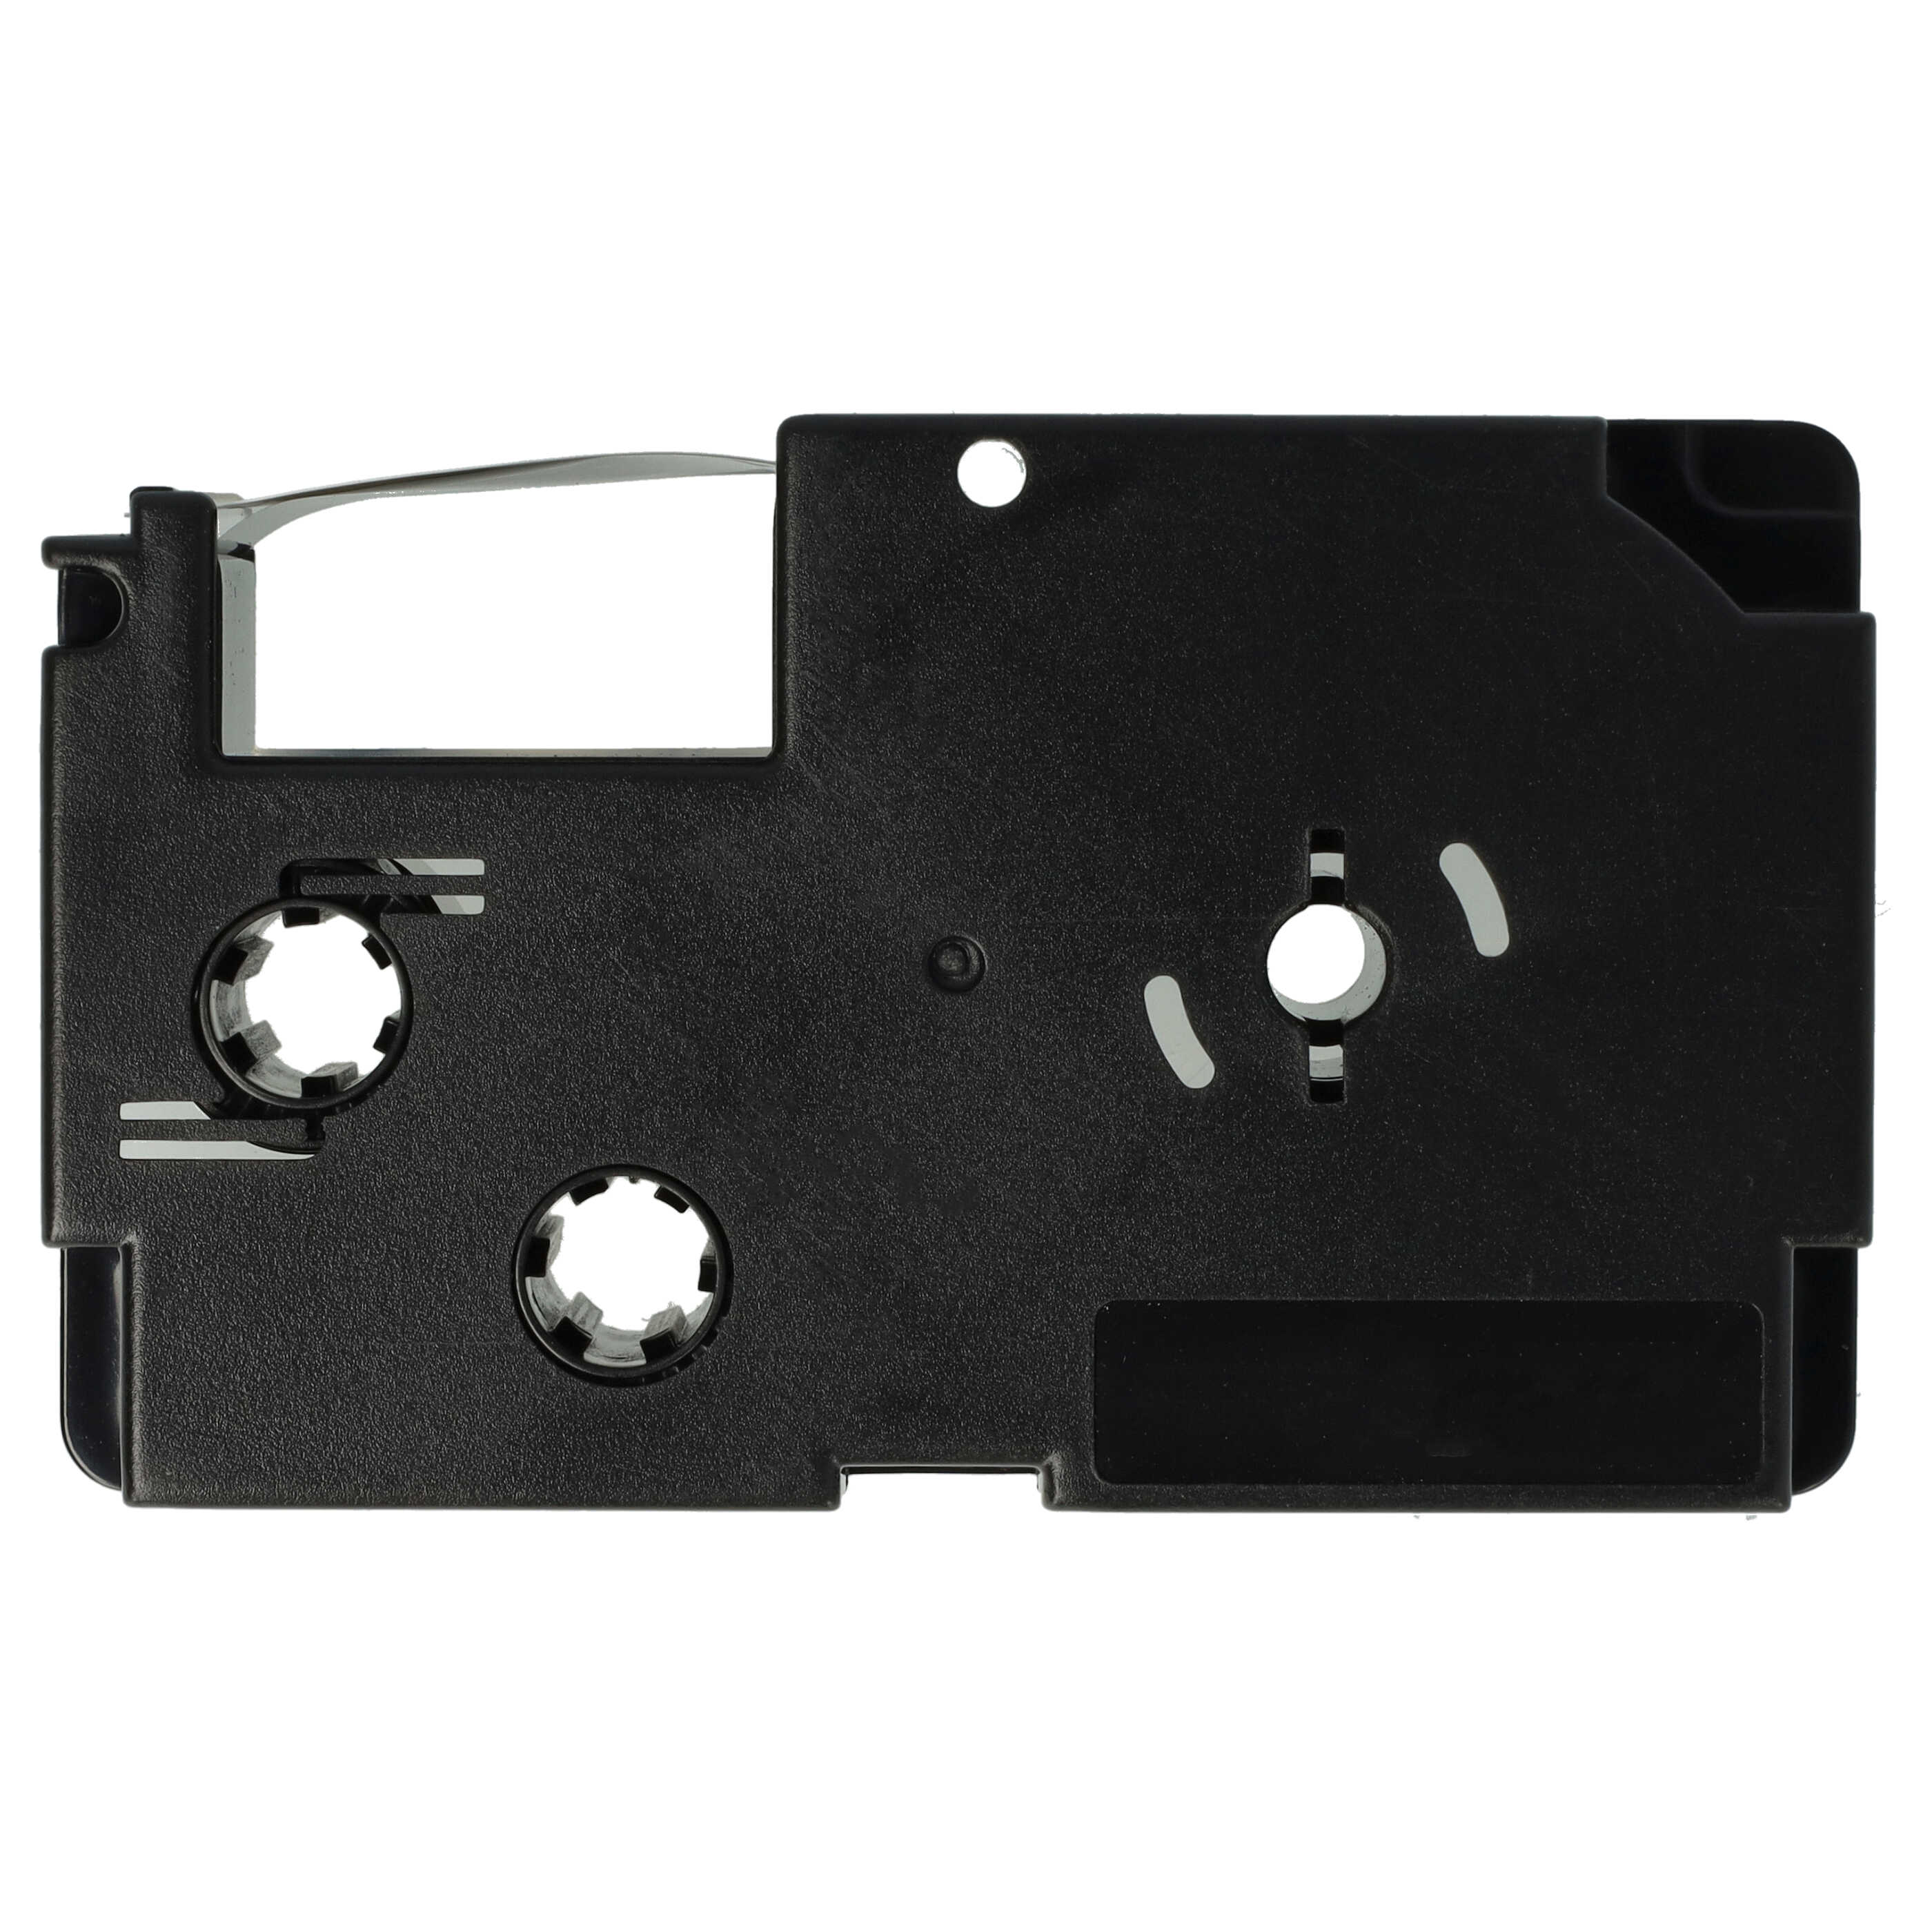 Casete cinta escritura reemplaza Casio XR-18WE, XR-18WE1 Negro su Blanco